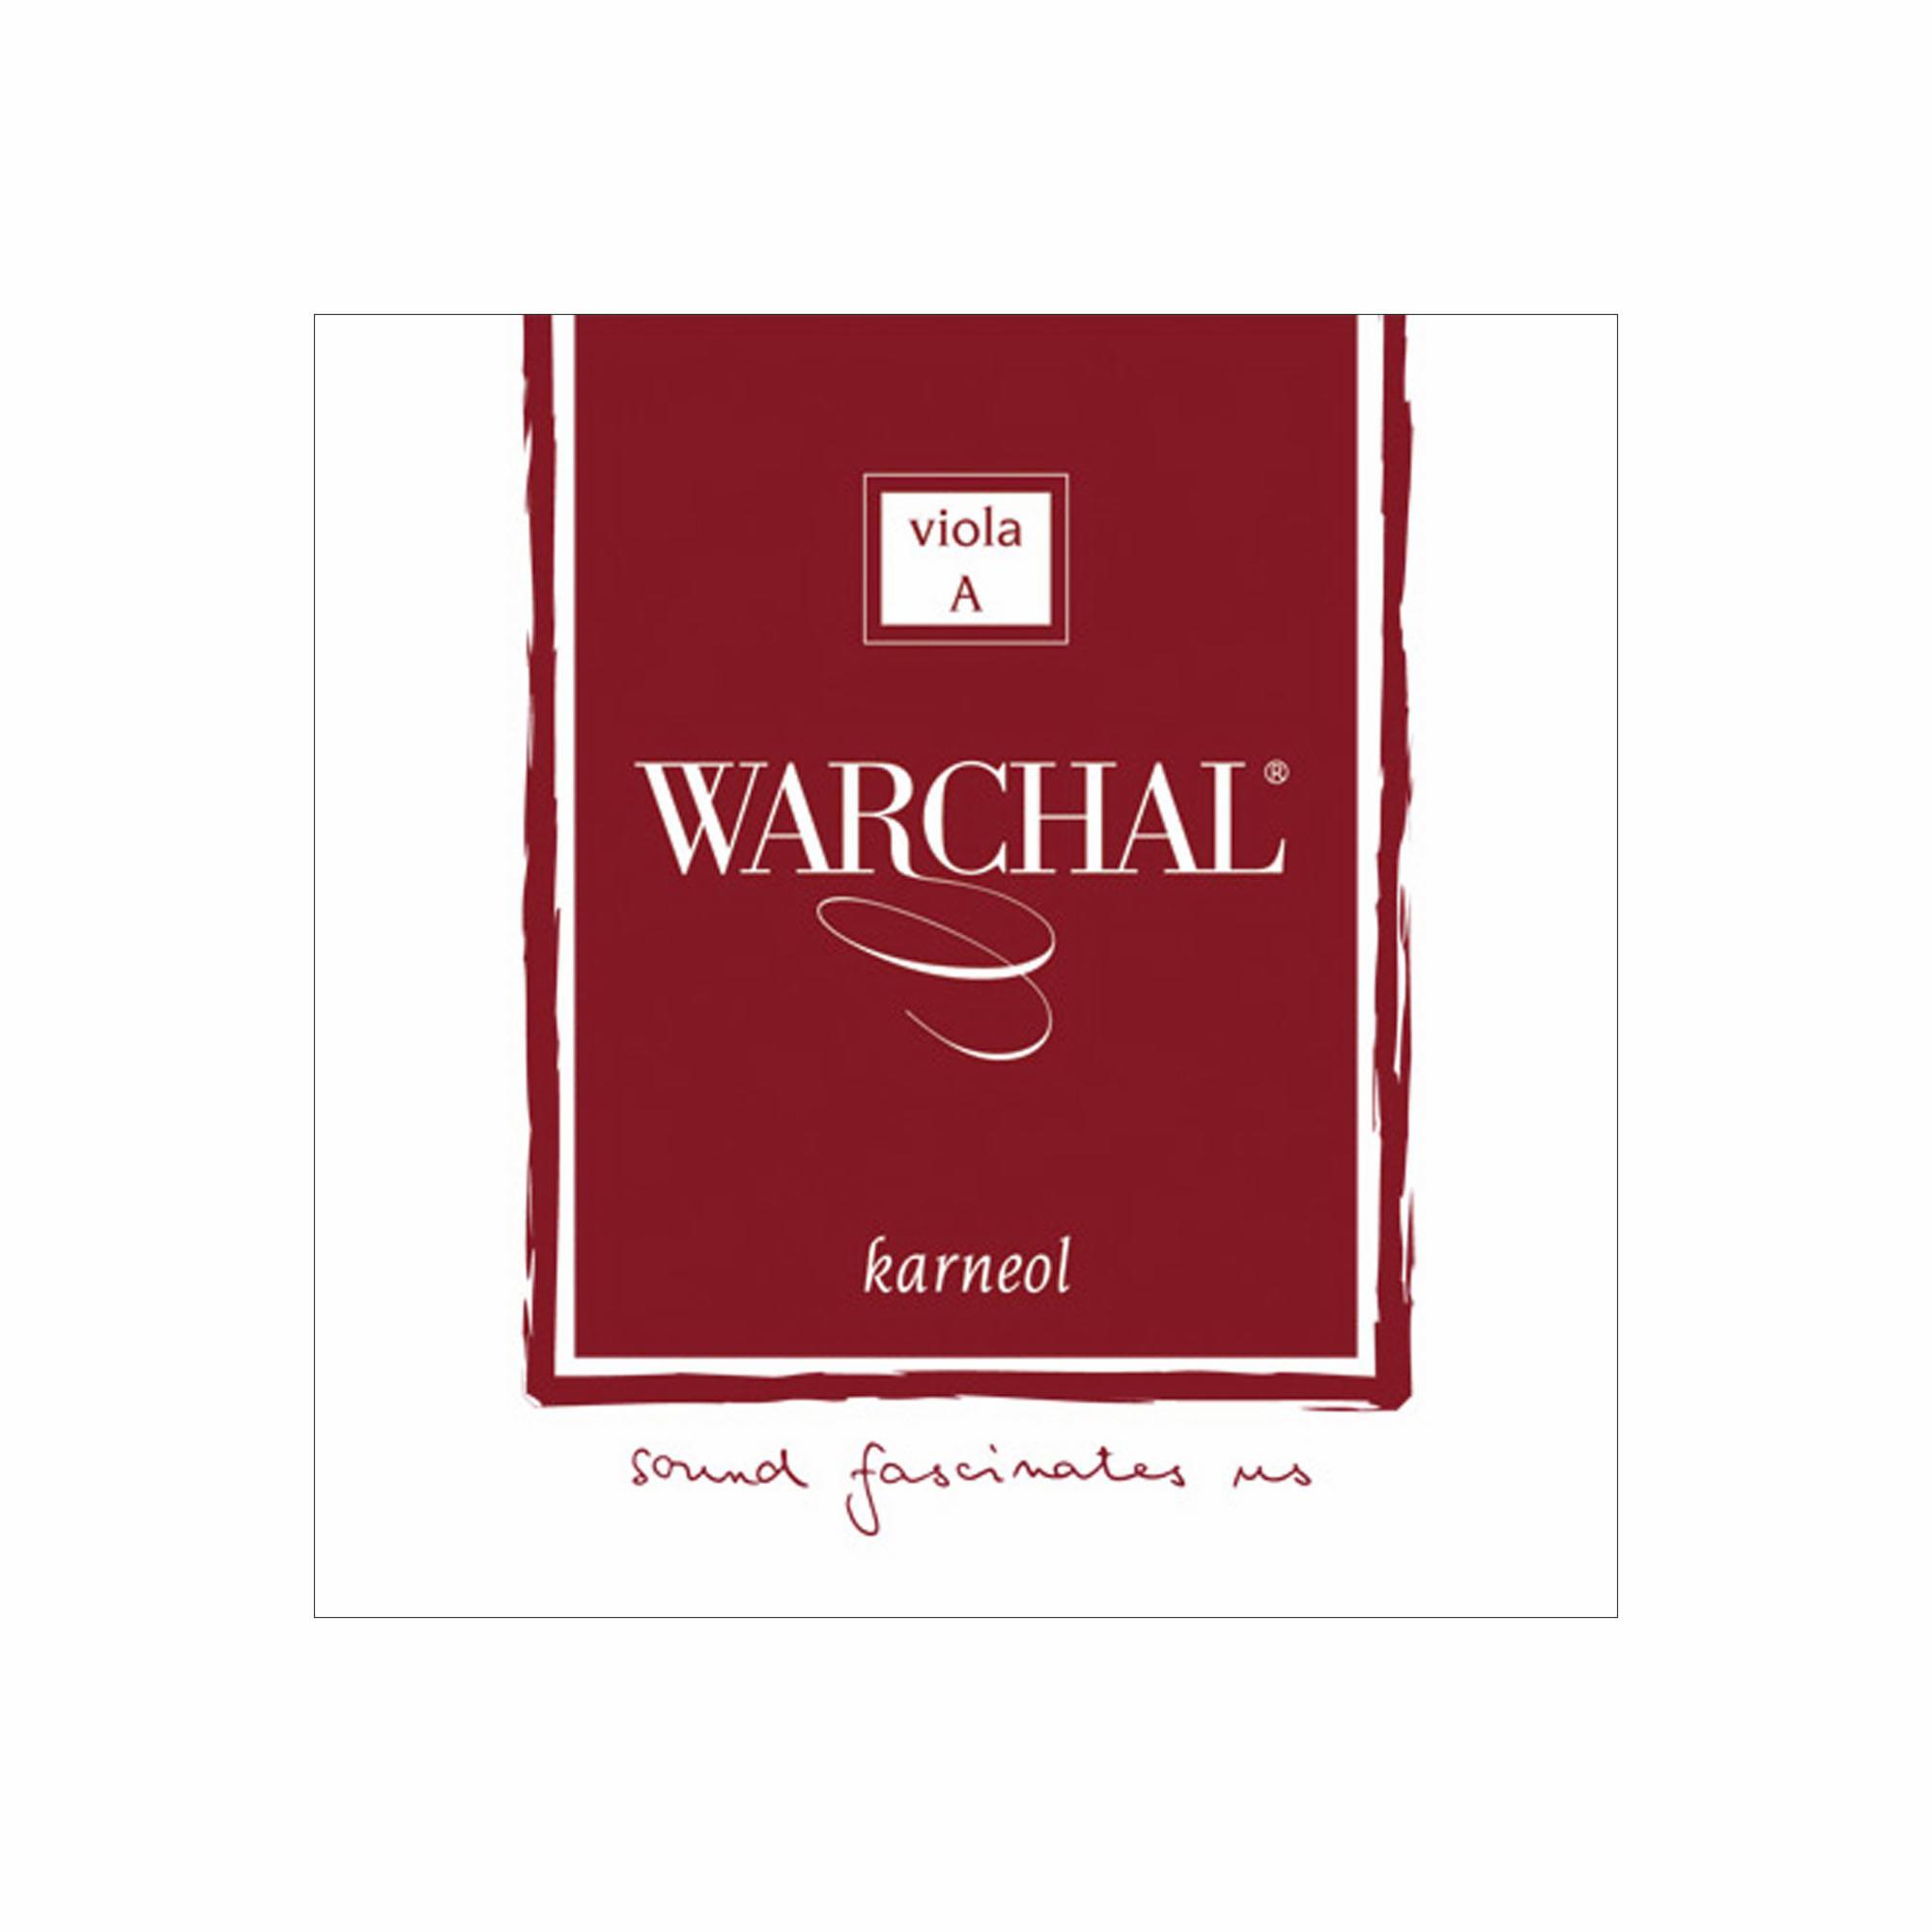 Warchal Karneol Viola Strings